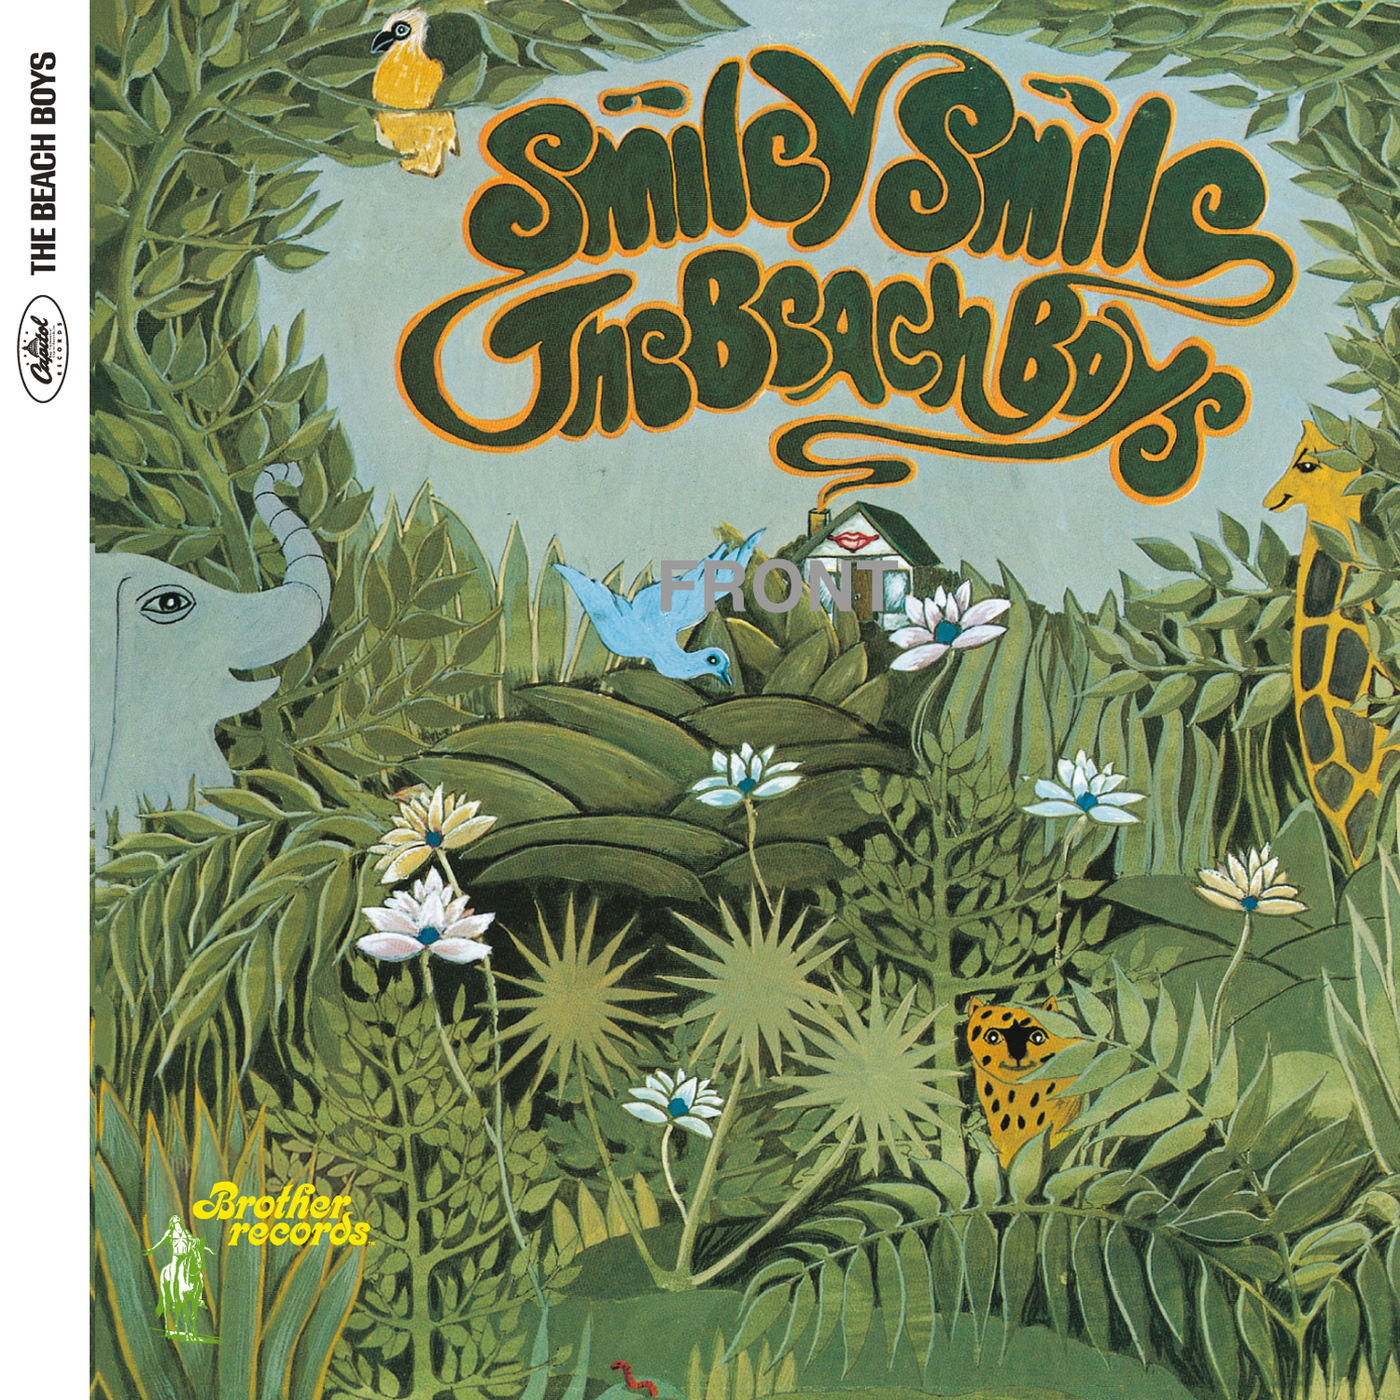 The Beach Boys – Smiley Smile (Stereo)【192kHz／24bit】意大利区-OppsUpro音乐帝国